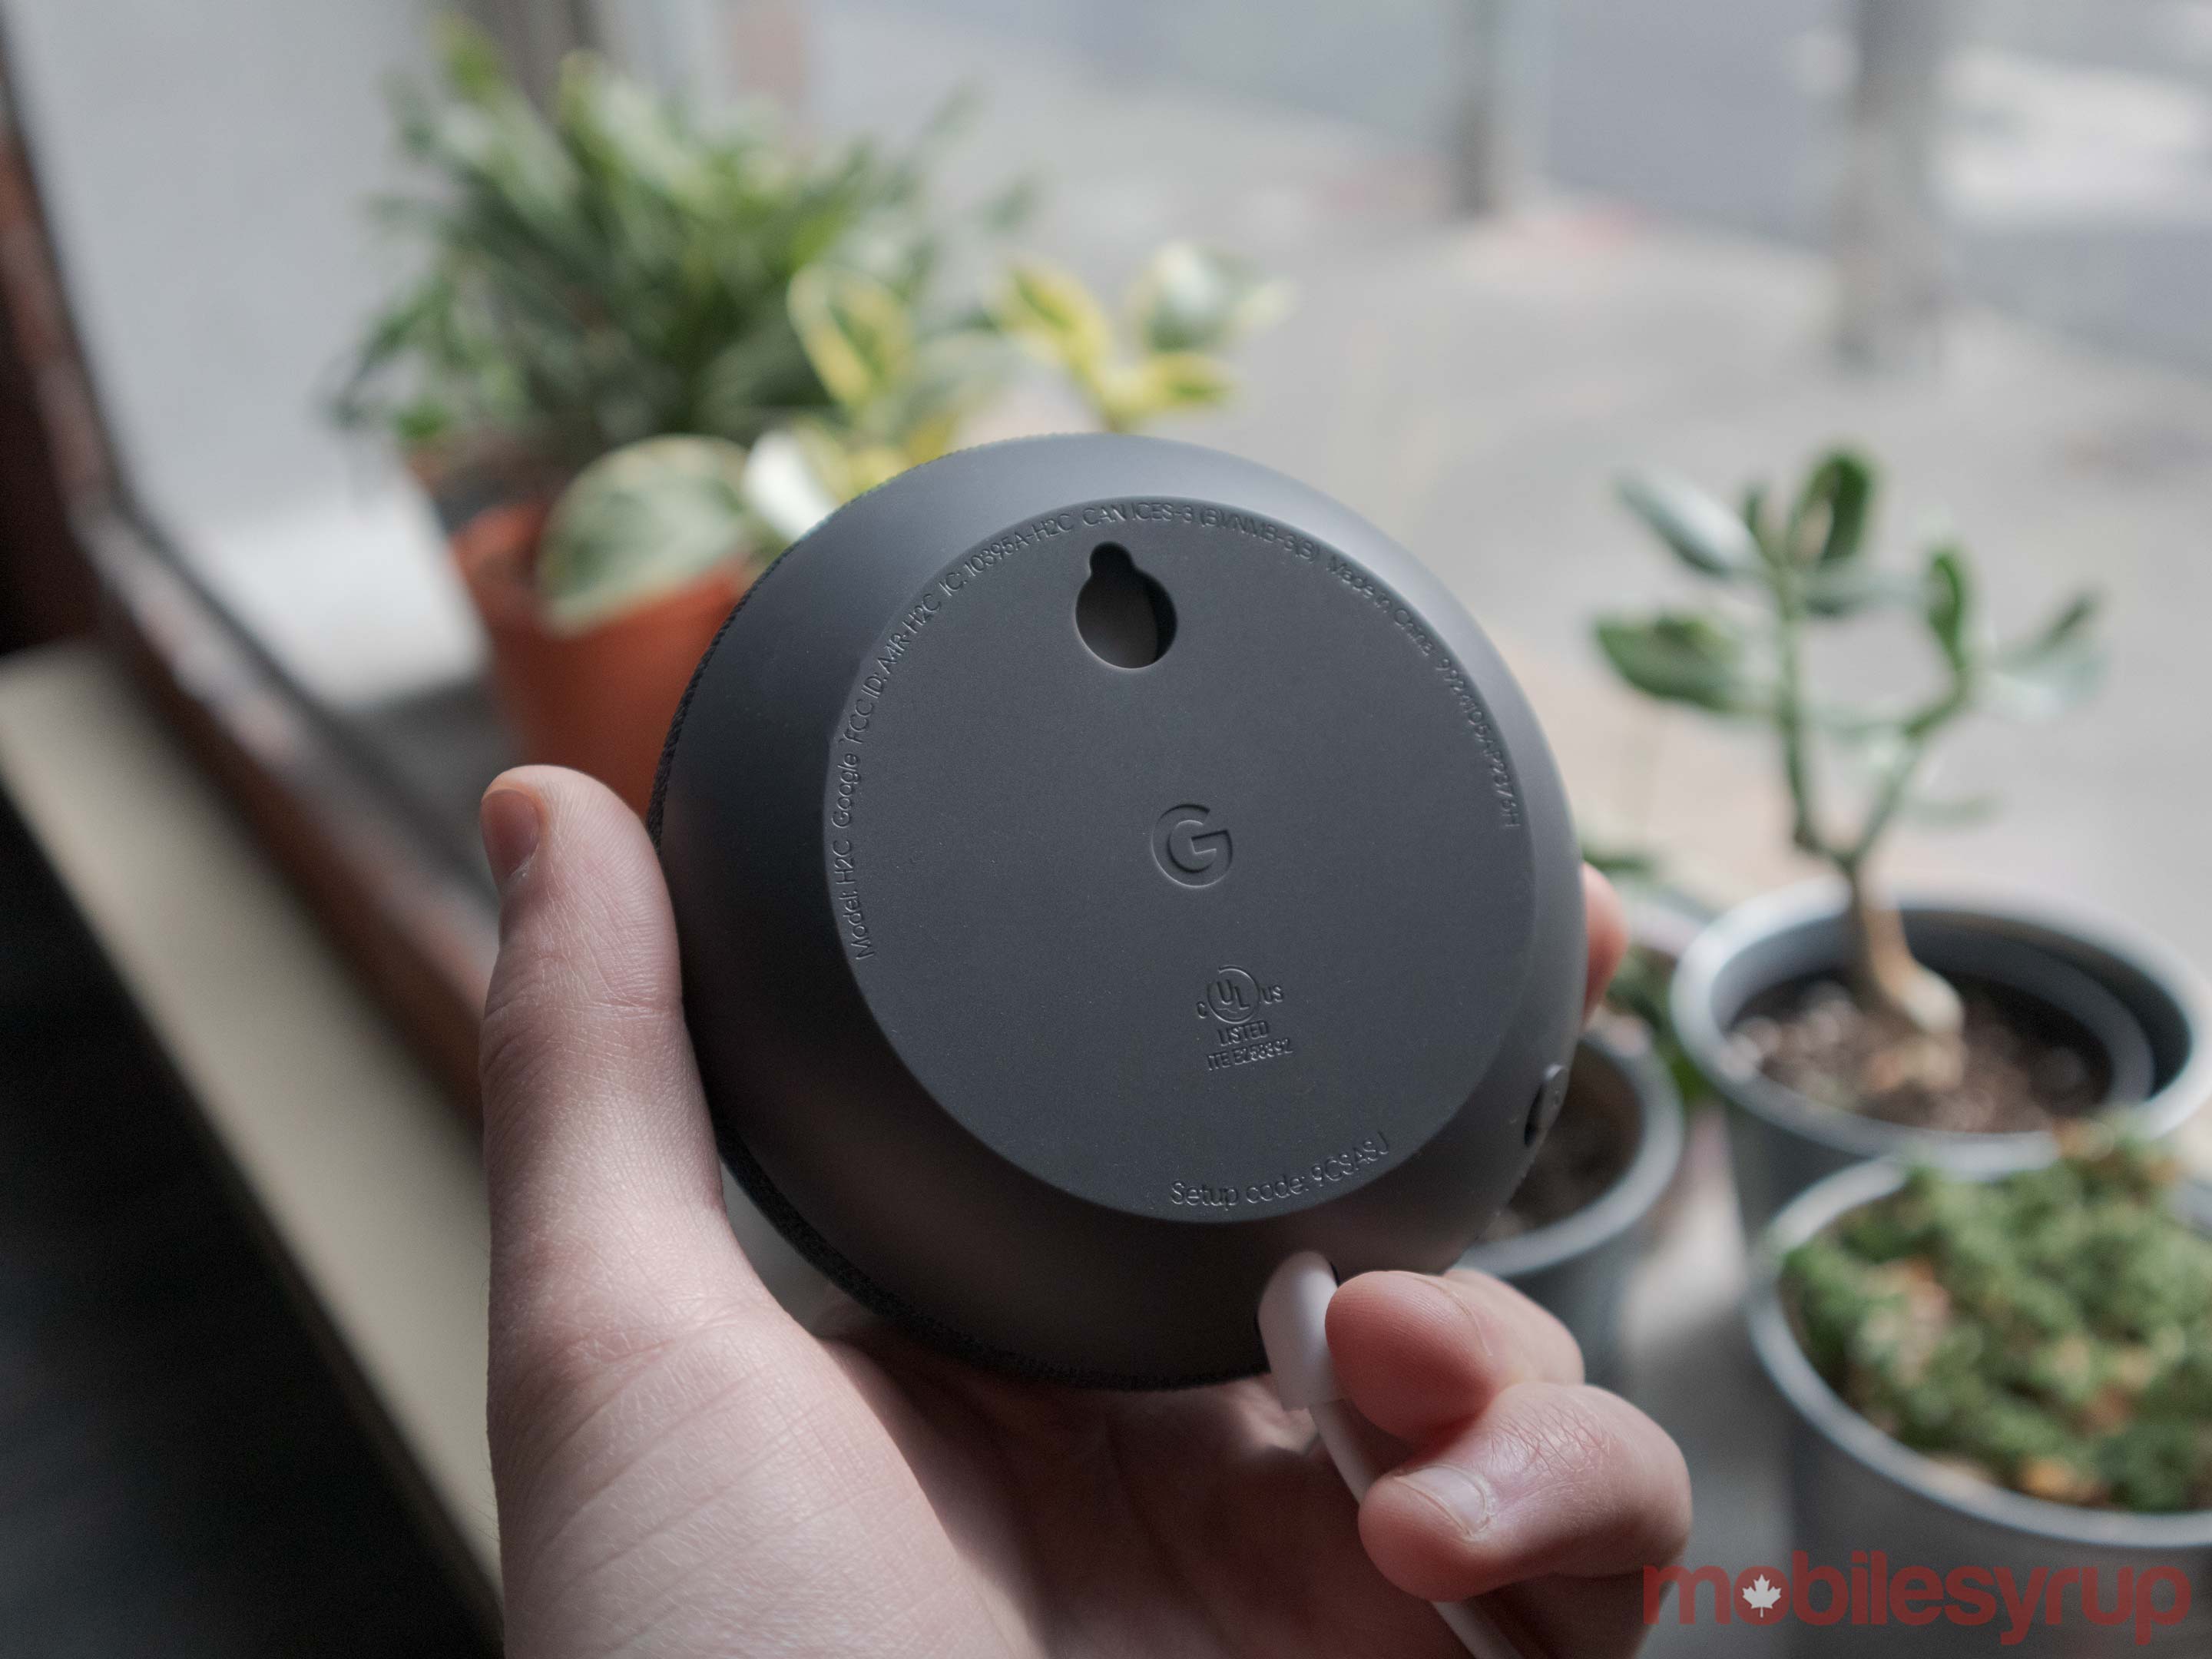 Exclusive: Google plans 'Nest Mini' w/ mount, better sound